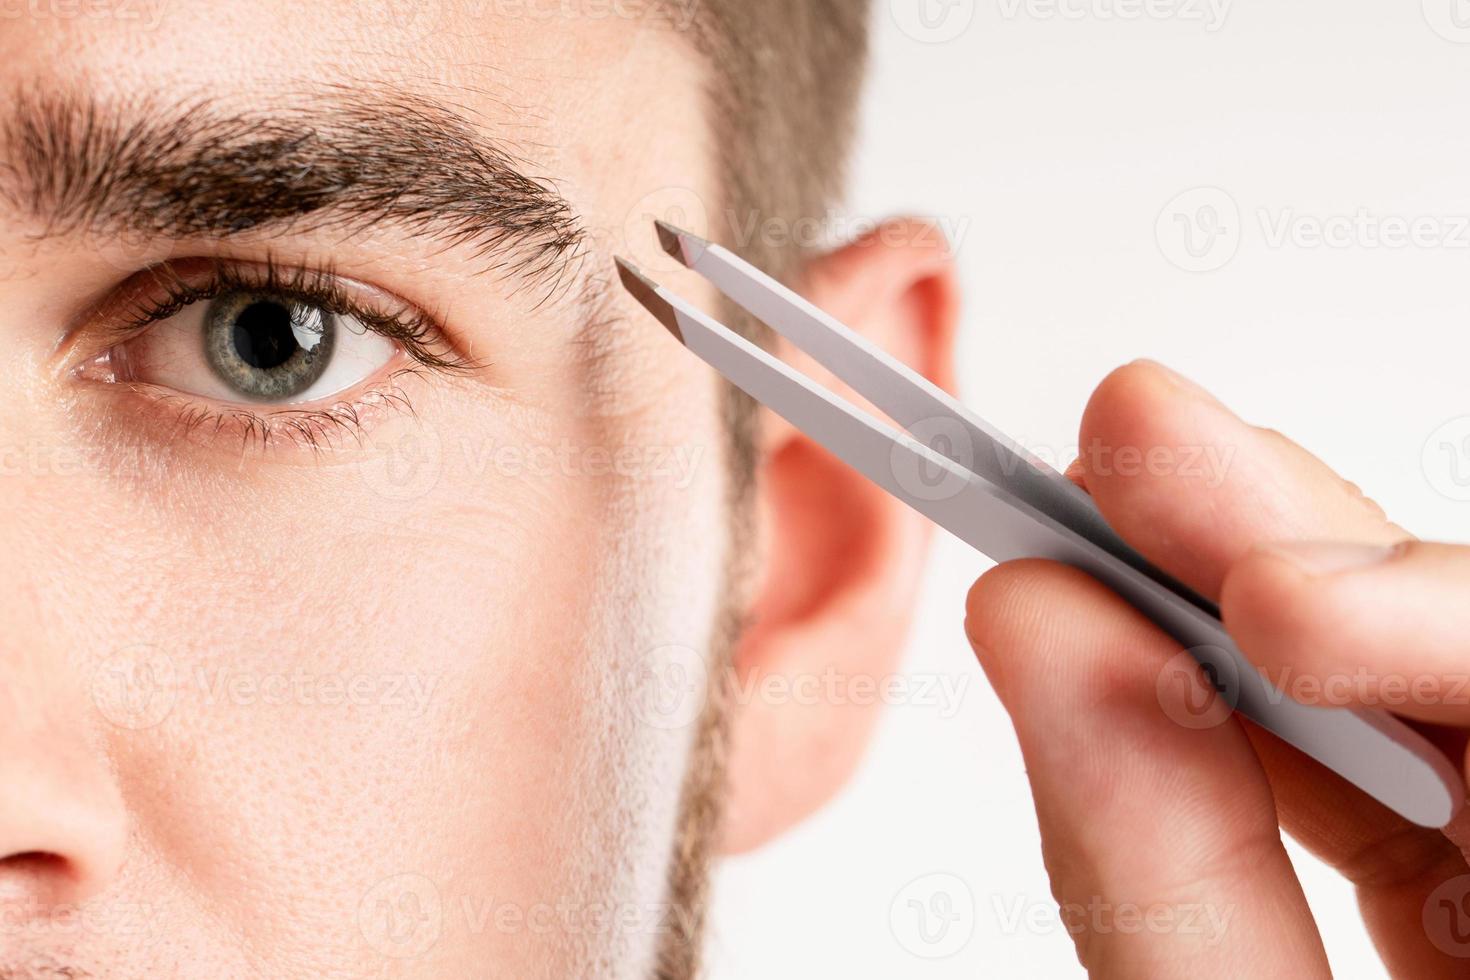 Male eye and tweezers for eyebrow grooming and shape correction photo